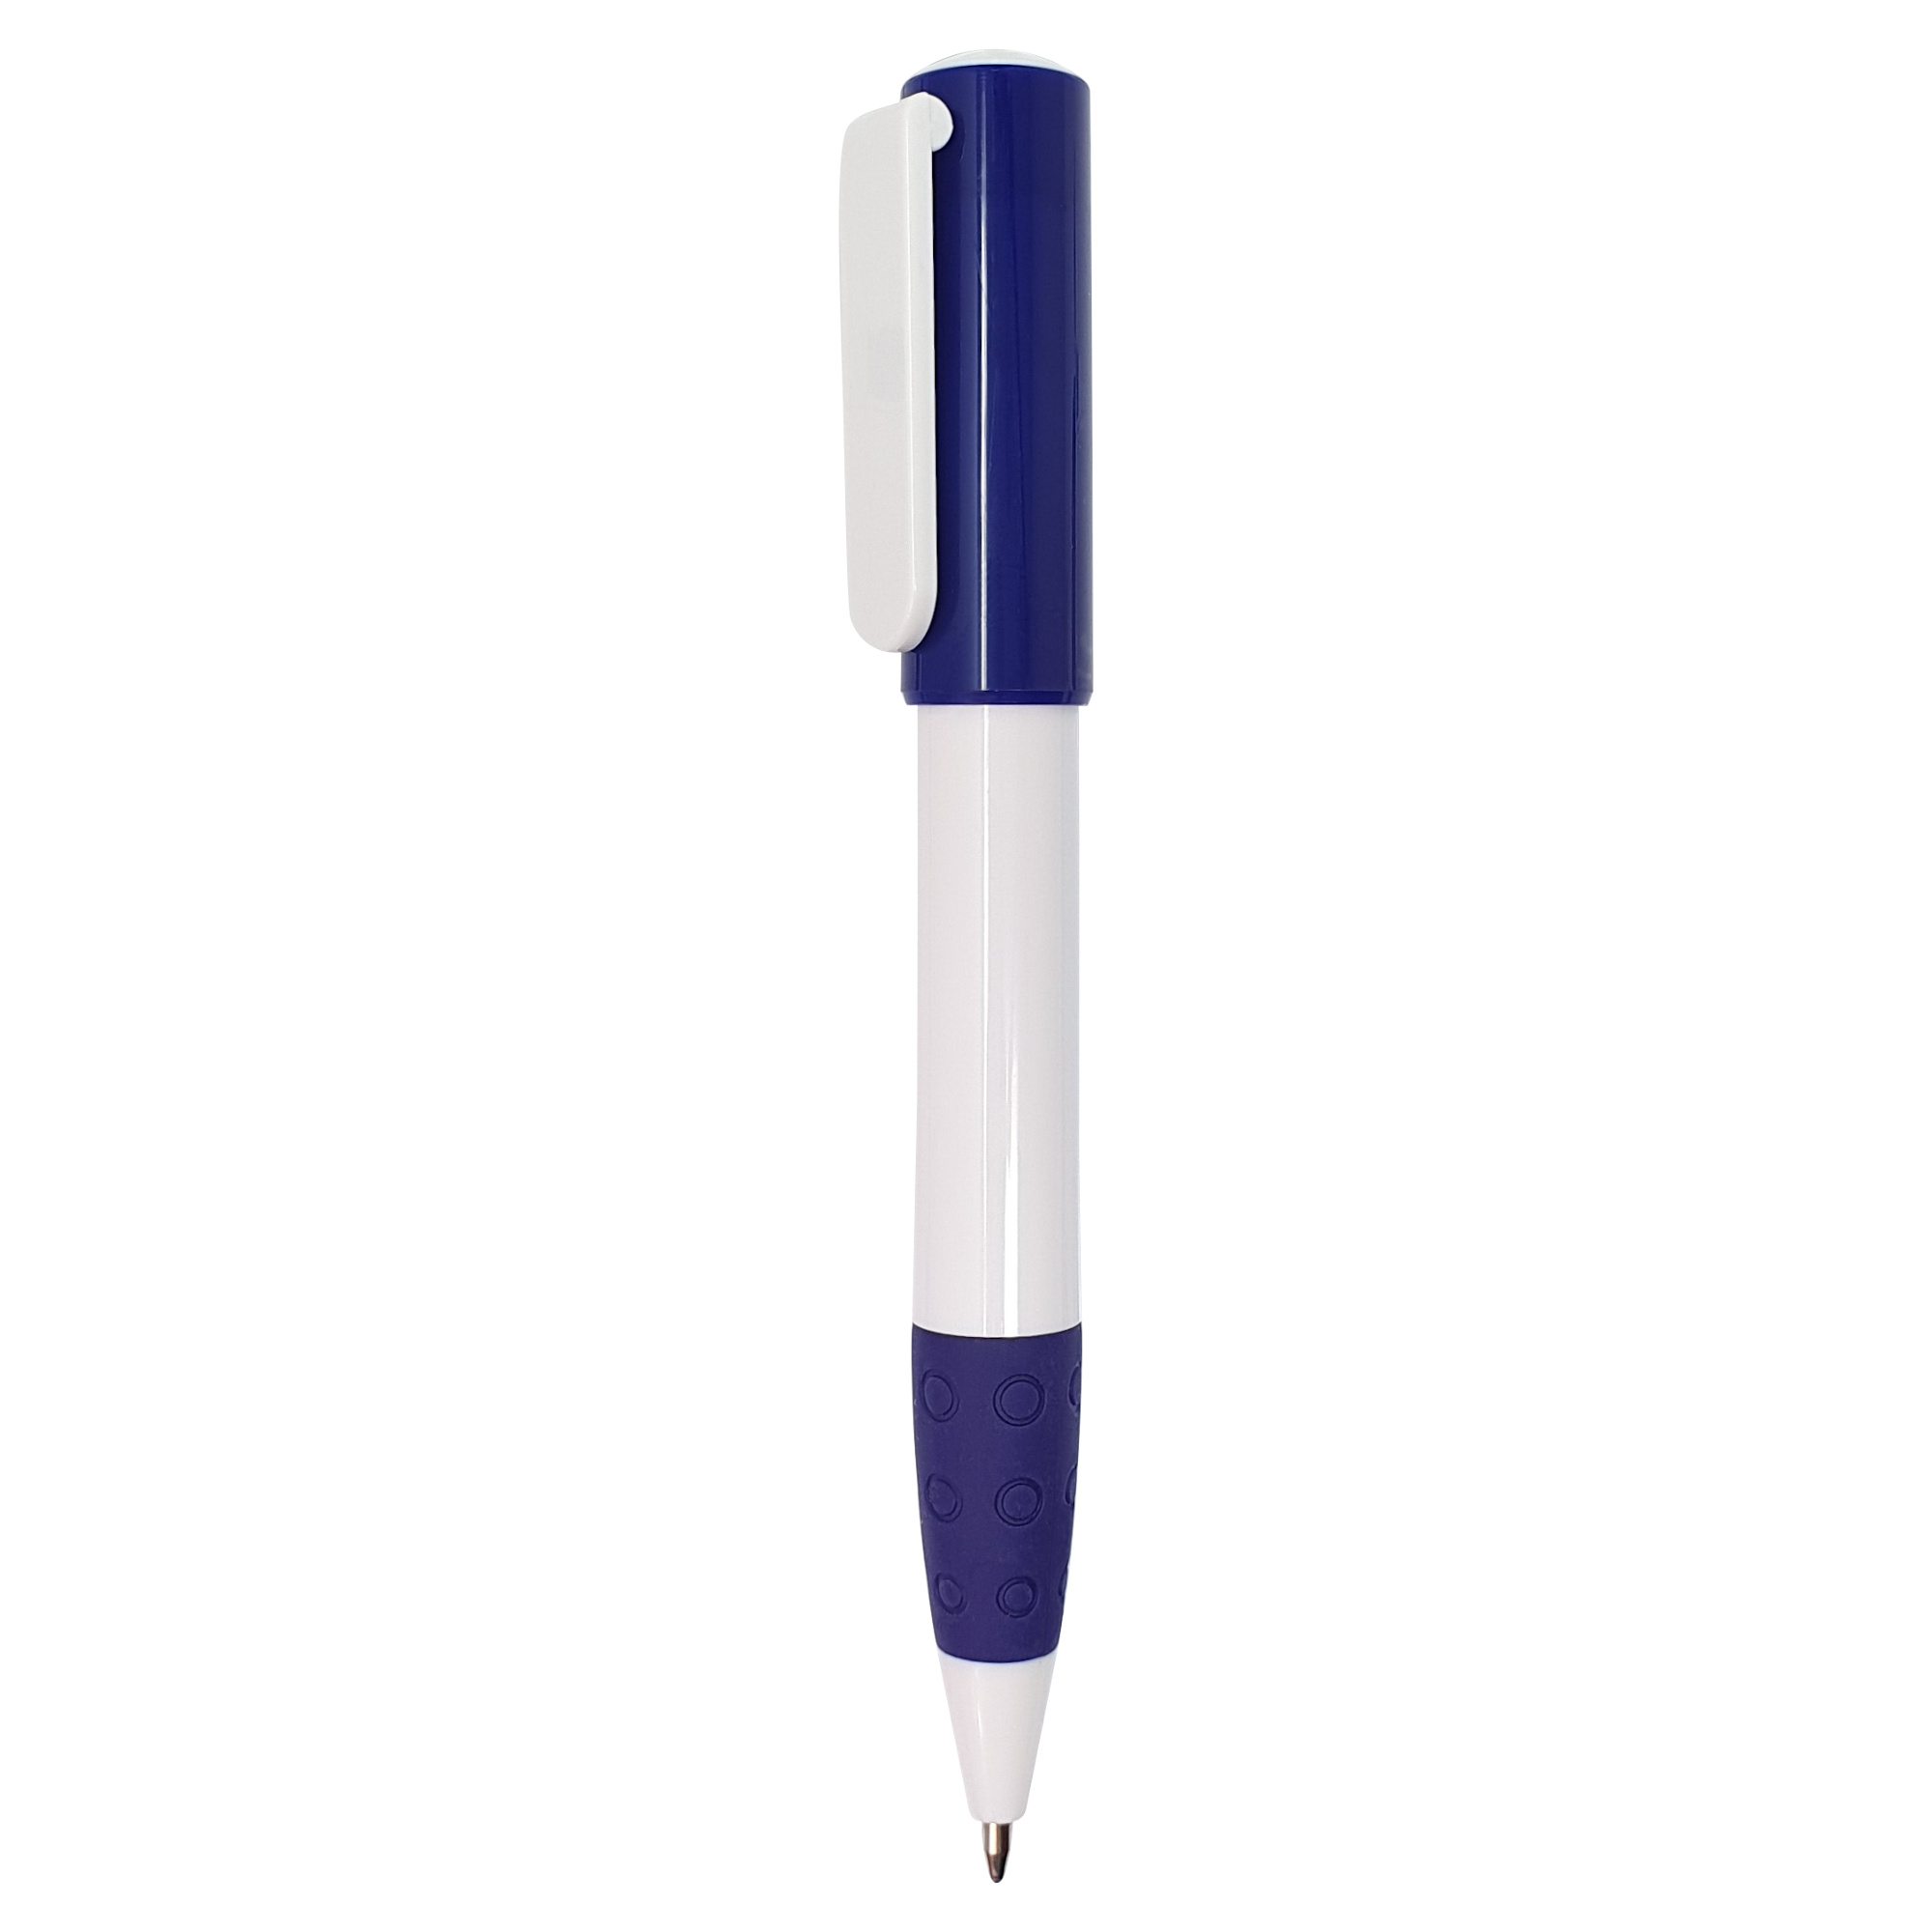 Bolígrafo Atlas
Color azul y blanco